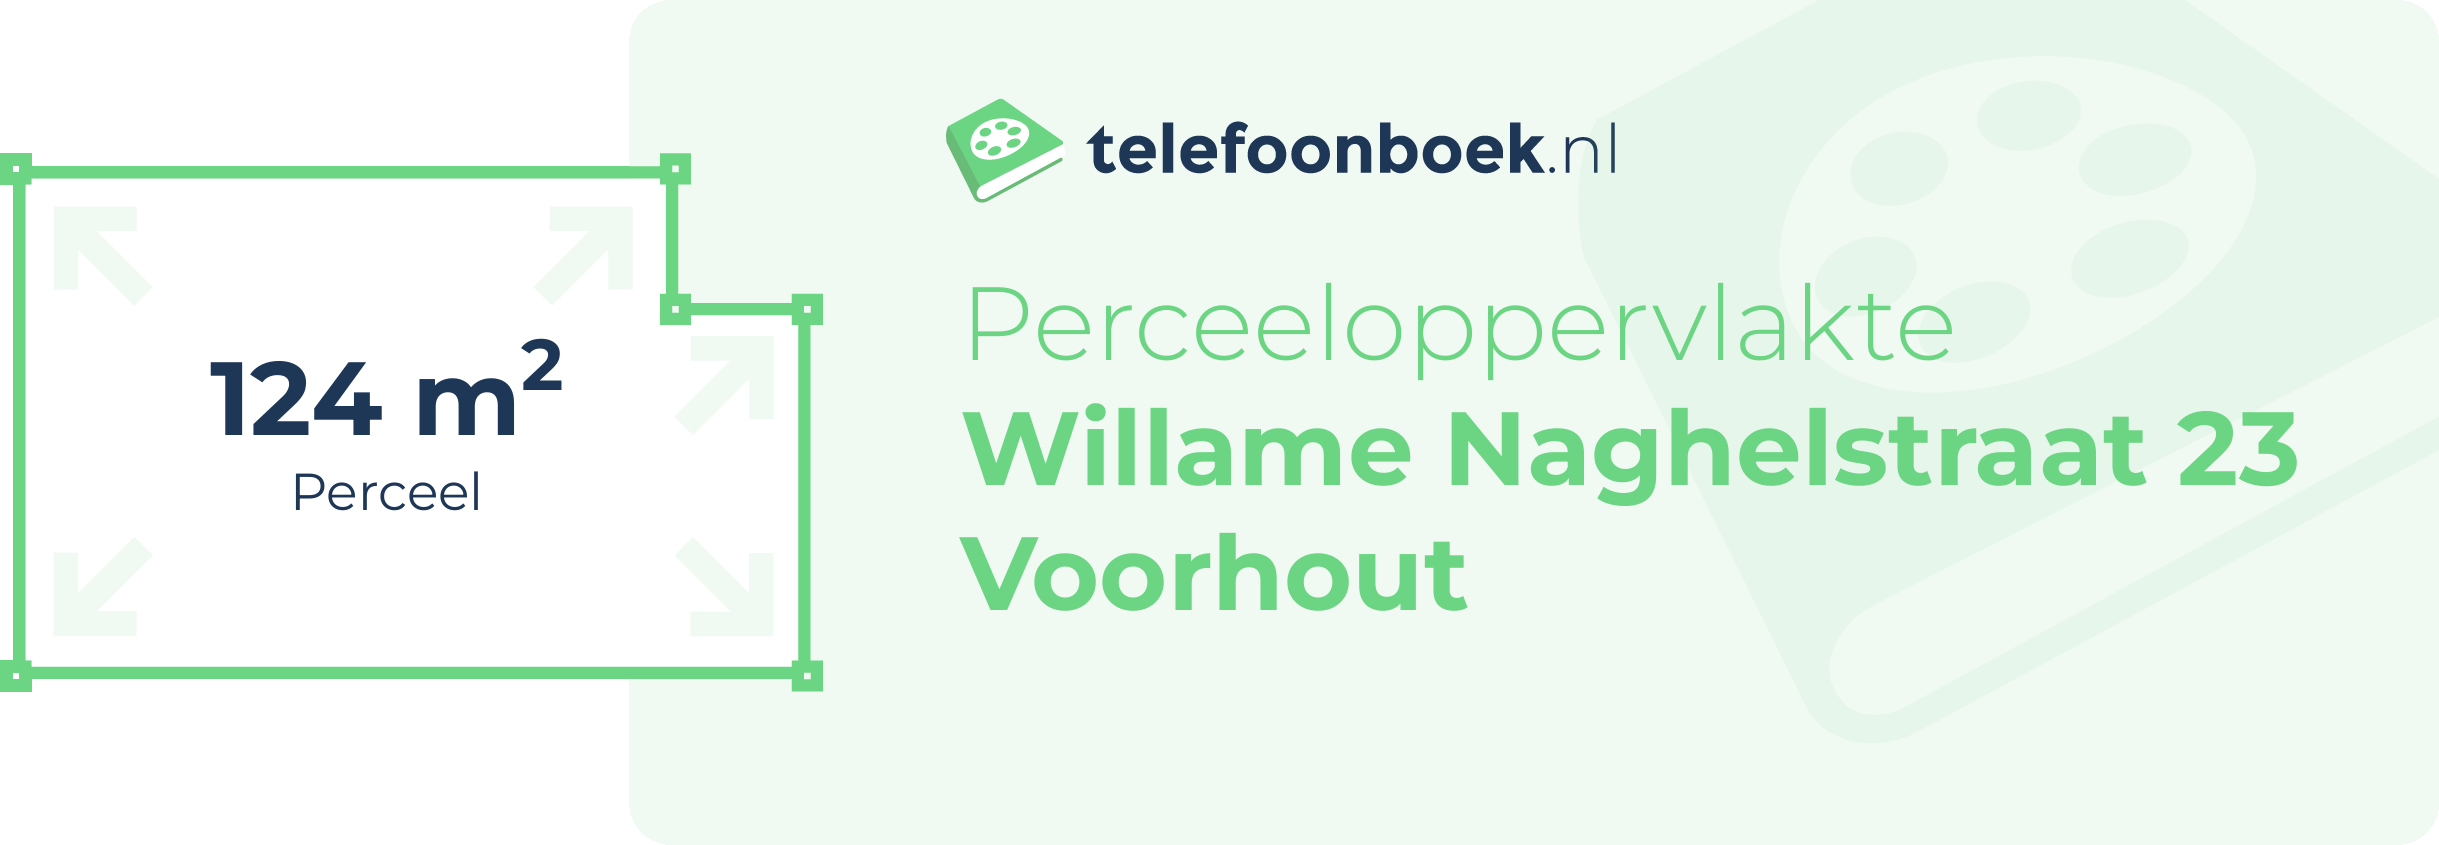 Perceeloppervlakte Willame Naghelstraat 23 Voorhout